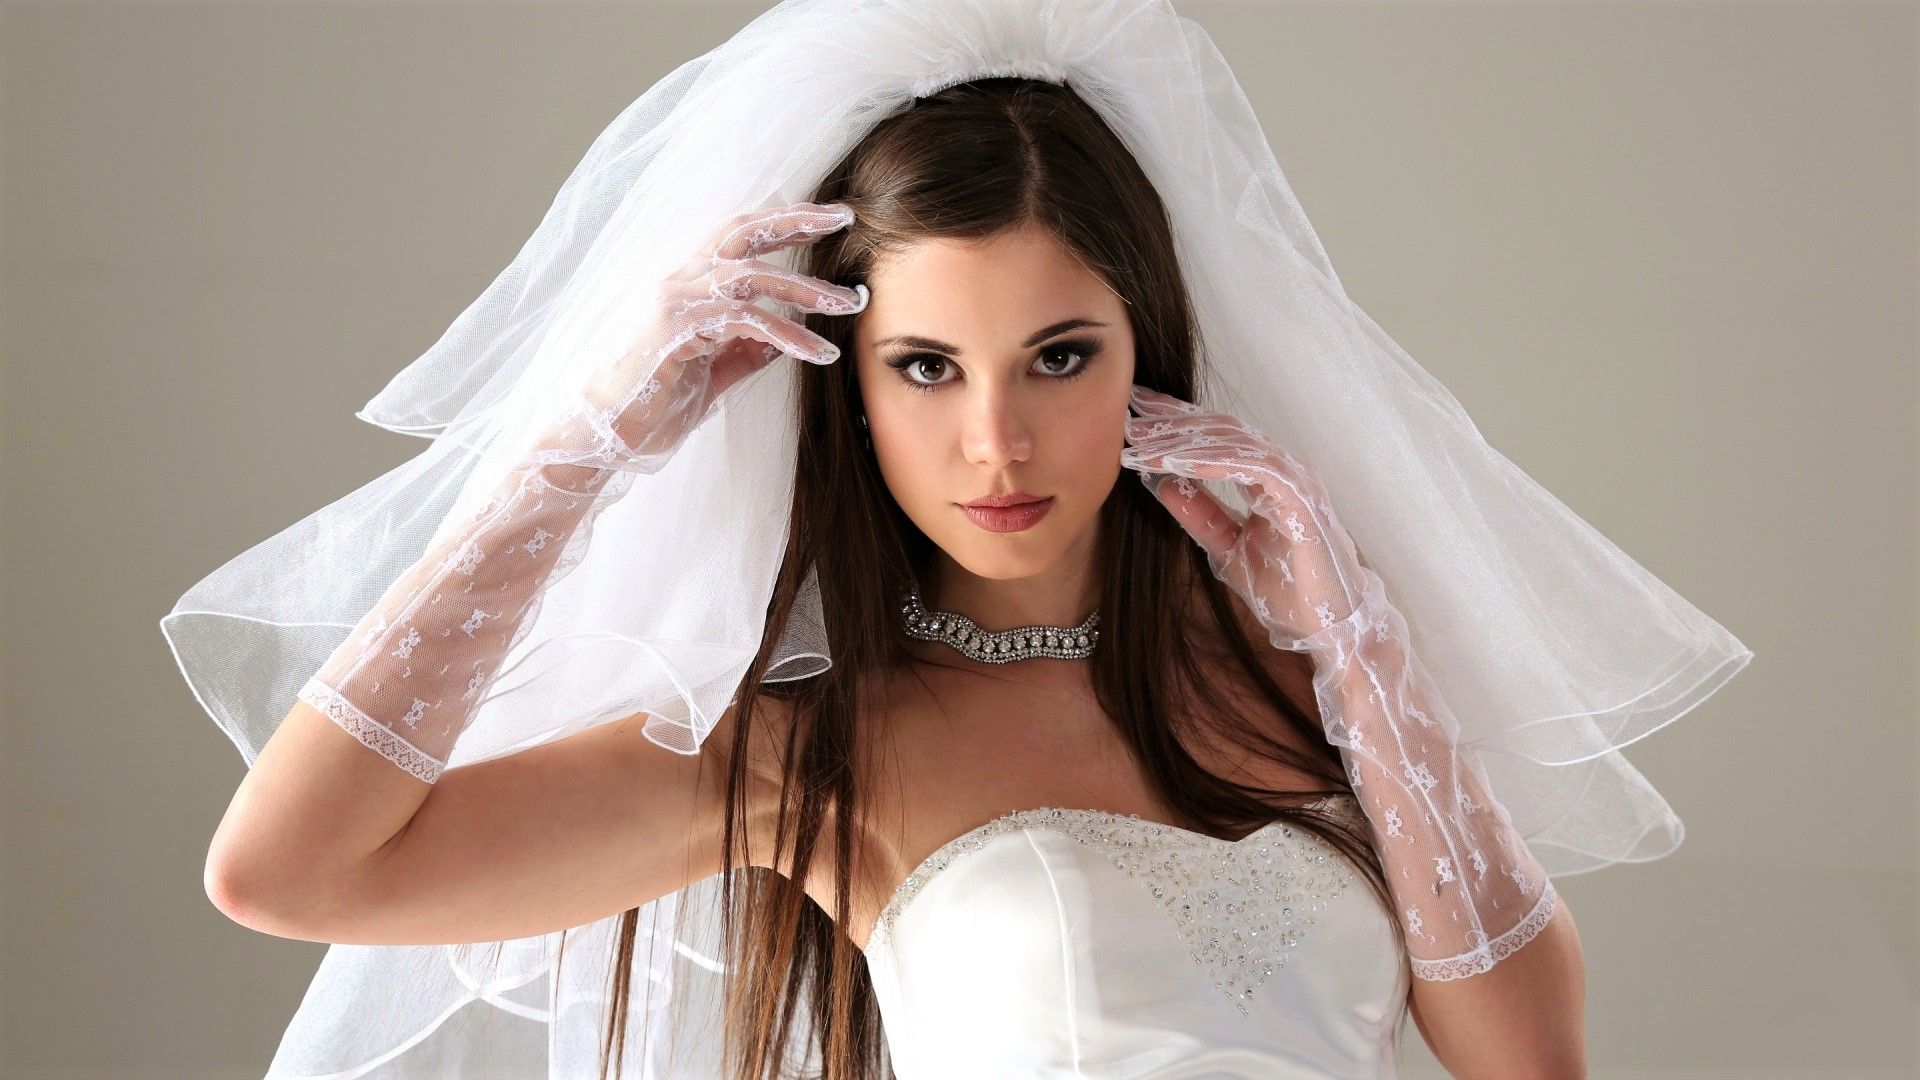 Desktop Wallpaper Wedding Dress, Necklace, Girl Model, Brunette, Hd Image,  Picture, Background, D4d6ca